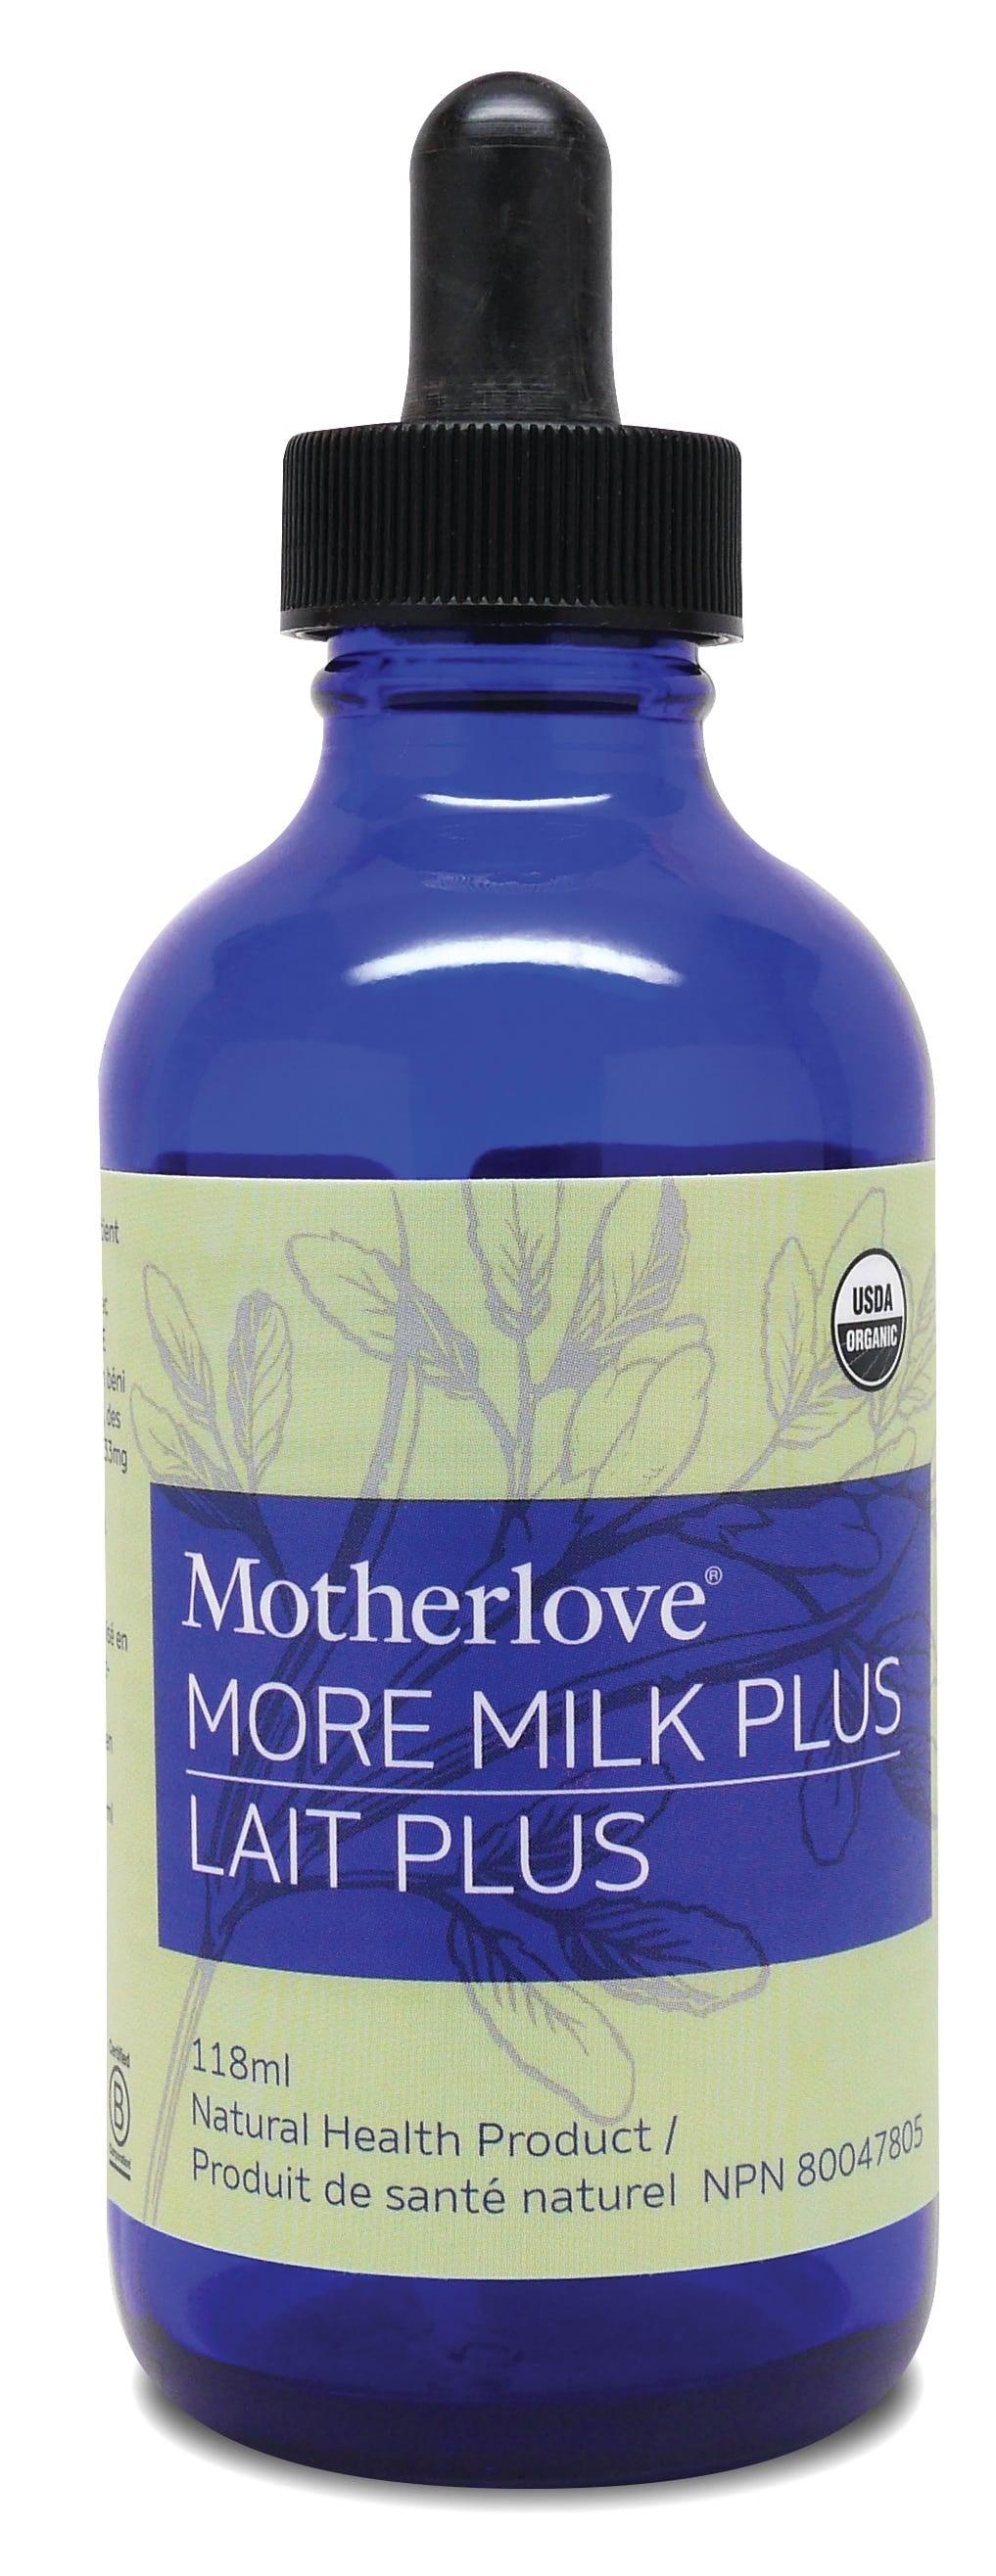 Motherlove More Milk Plus 118ml